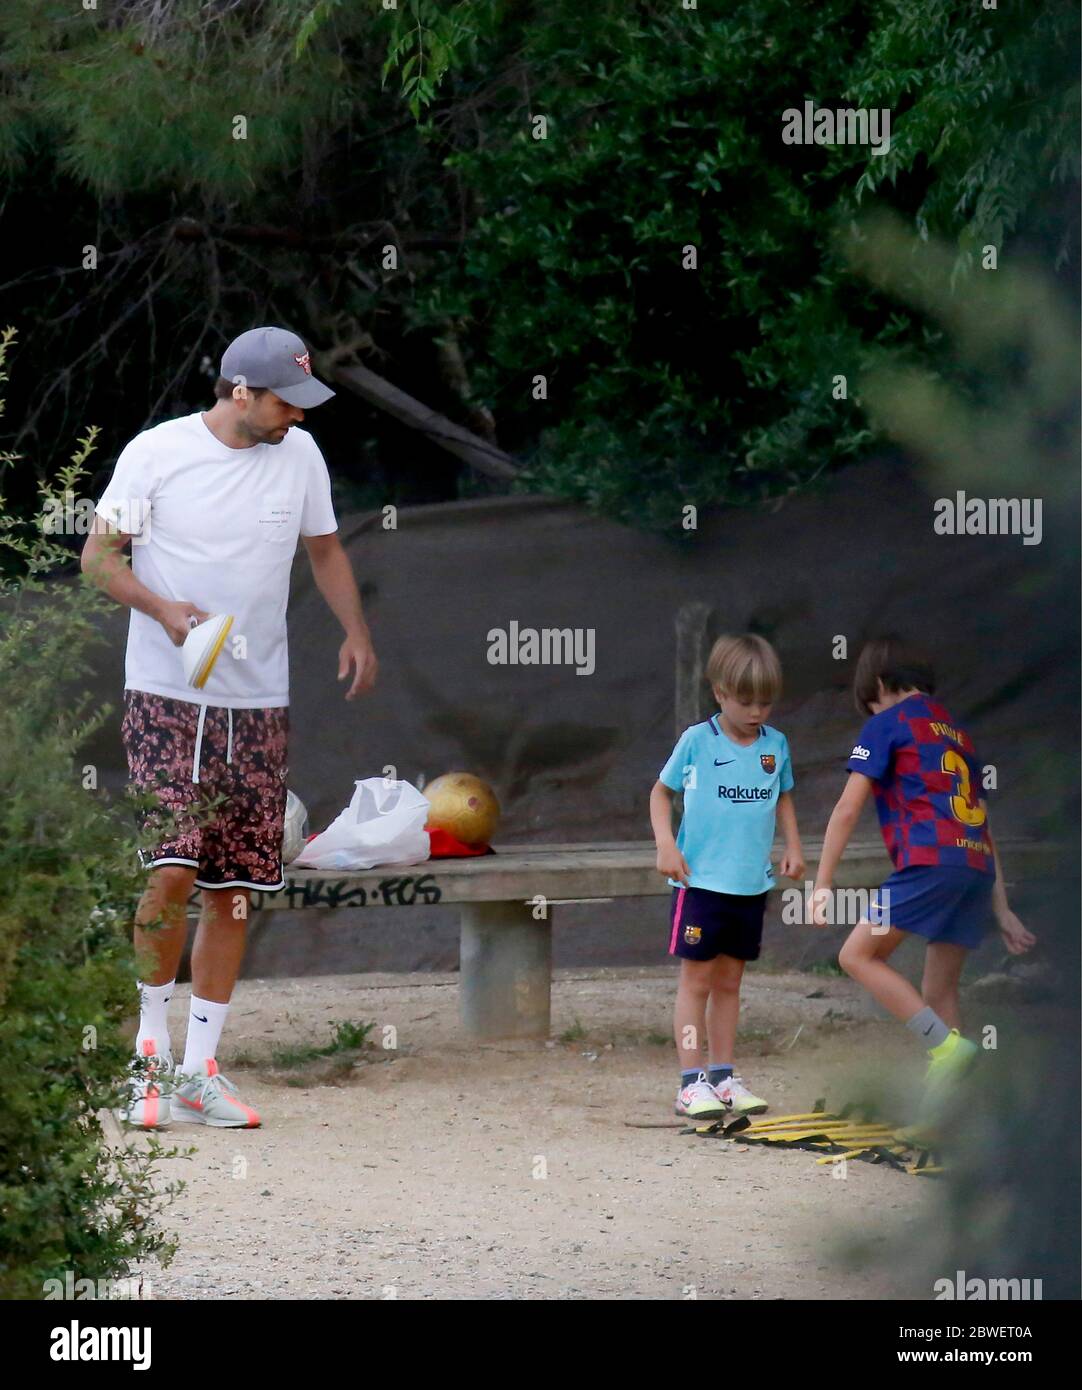 Gerard pique, joueur du FC Barcelone et mari de Shakira, est vu en  conduisant une session de formation de football pour ses fils Sasha pique  et Milan pique dans un parc dans